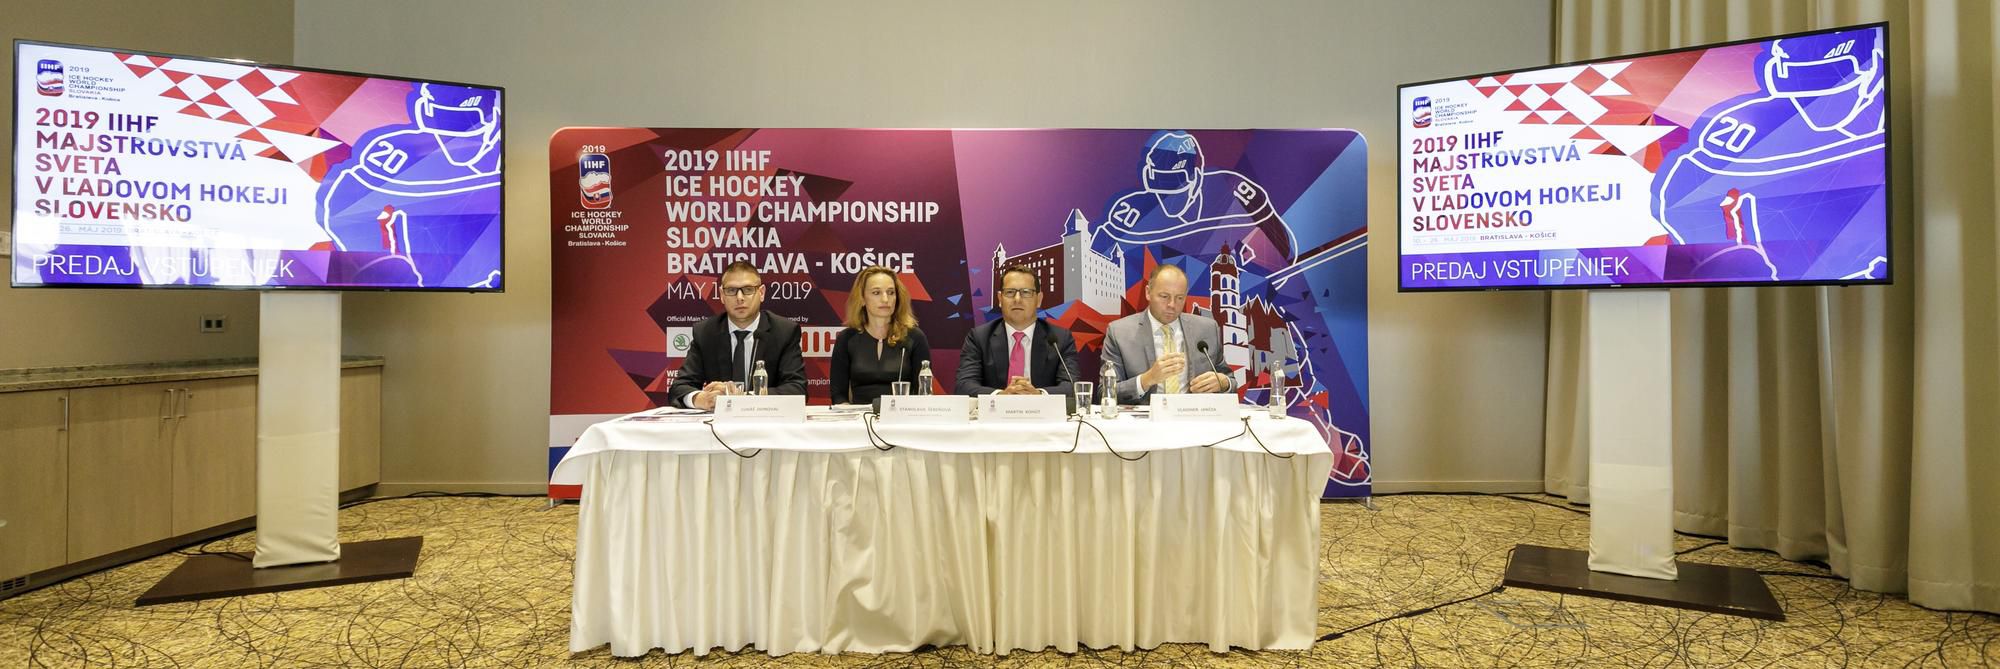 TK Organizačného výboru Majstrovstiev sveta v ľadovom hokeji 2019 v Bratislave